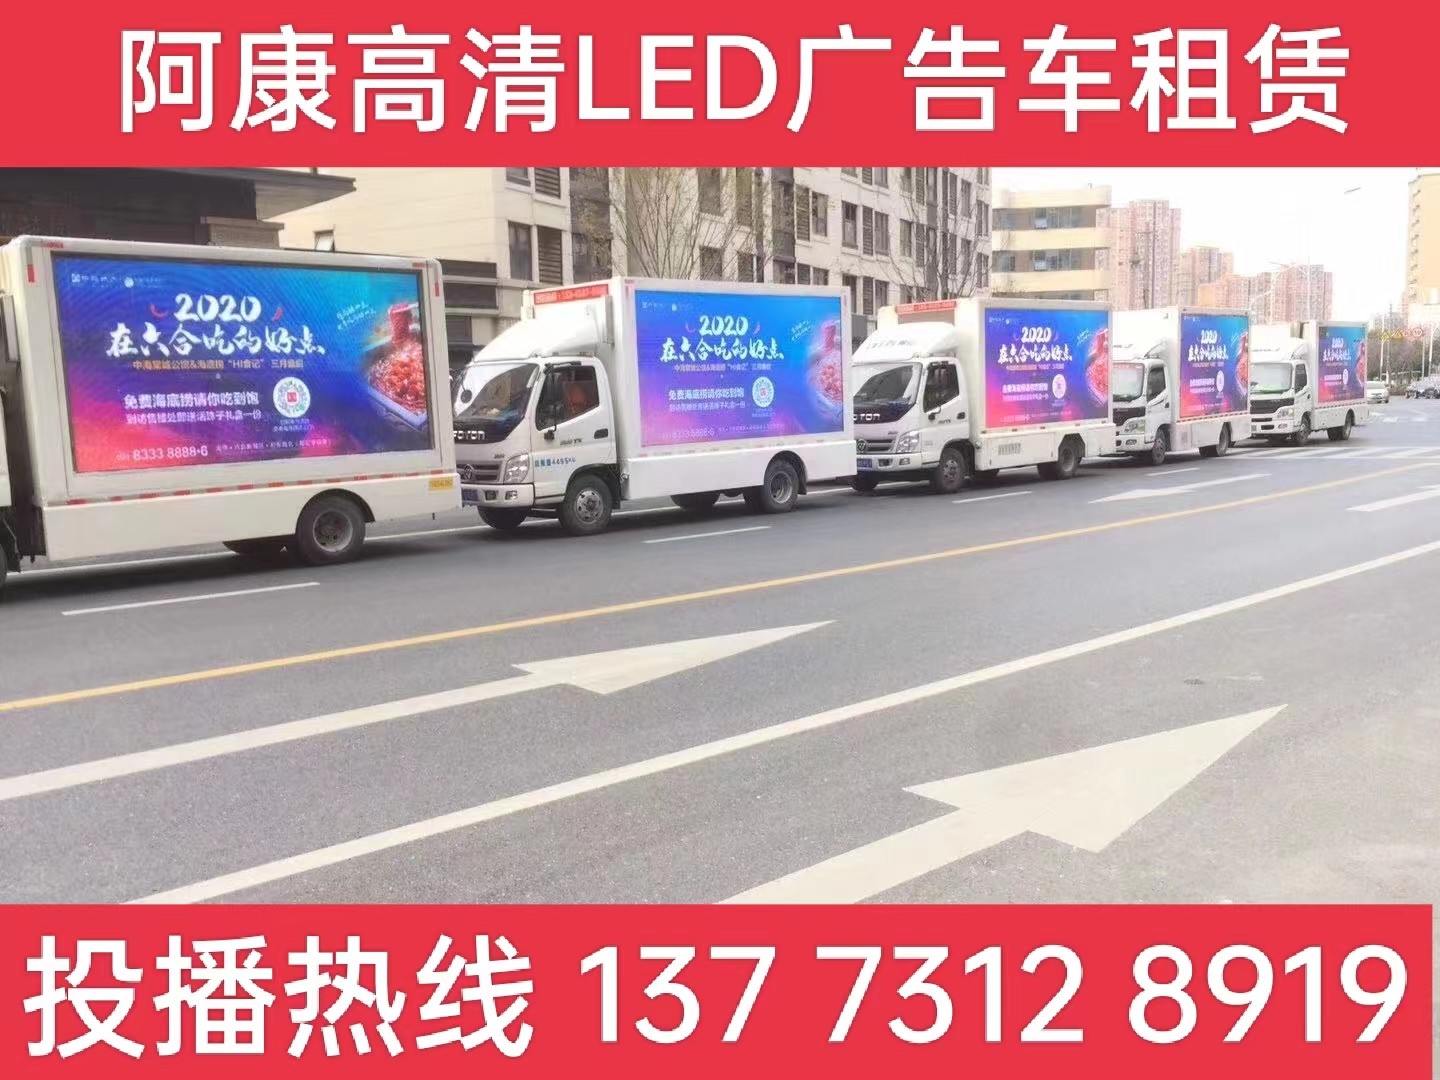 崇明岛宣传车出租-海底捞LED广告